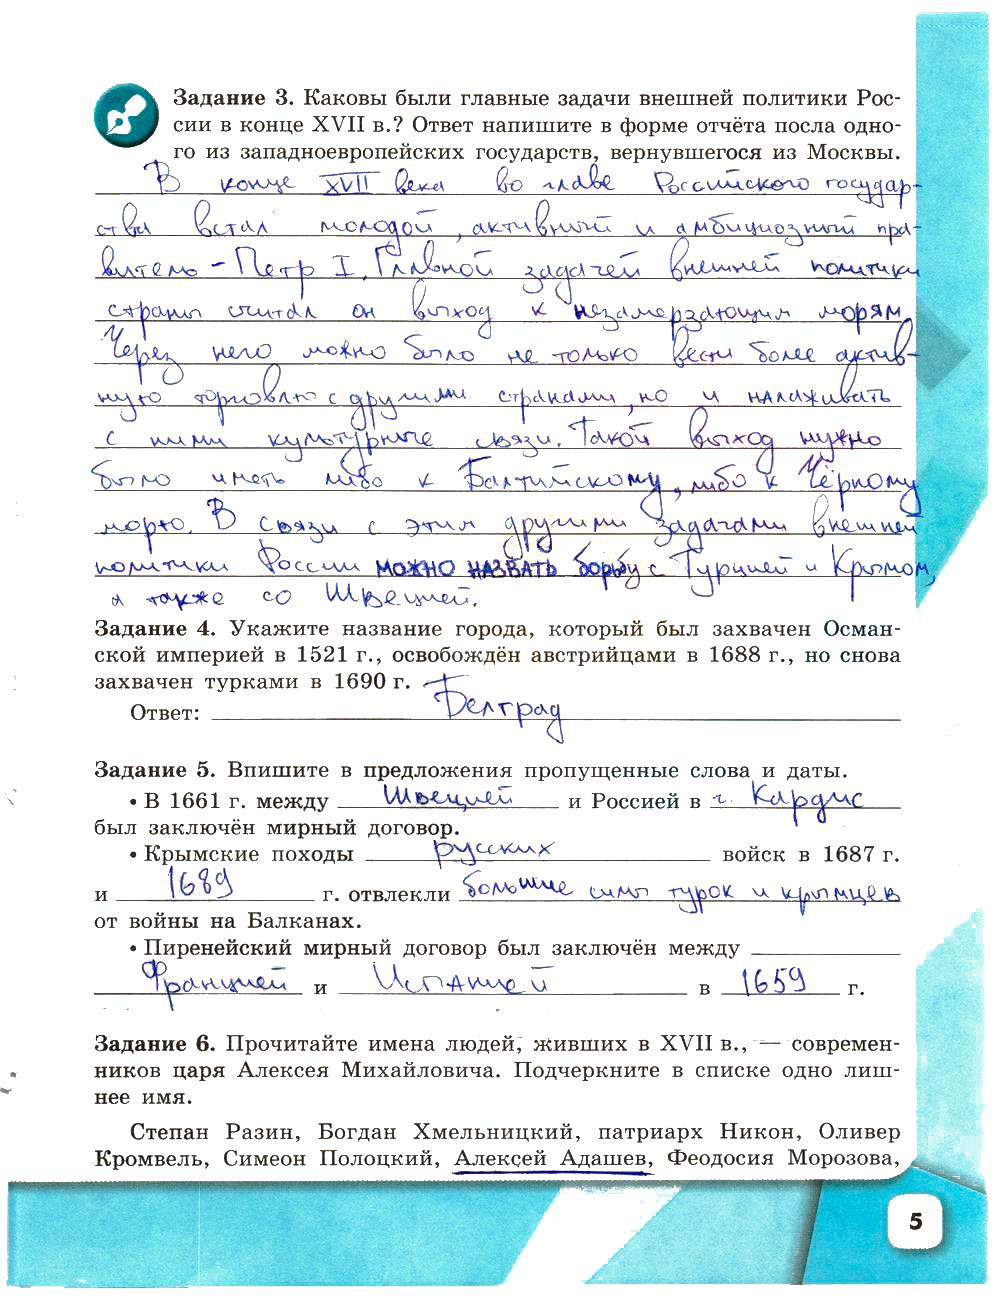 Рабочая тетрадь 8 класс история россии артасов